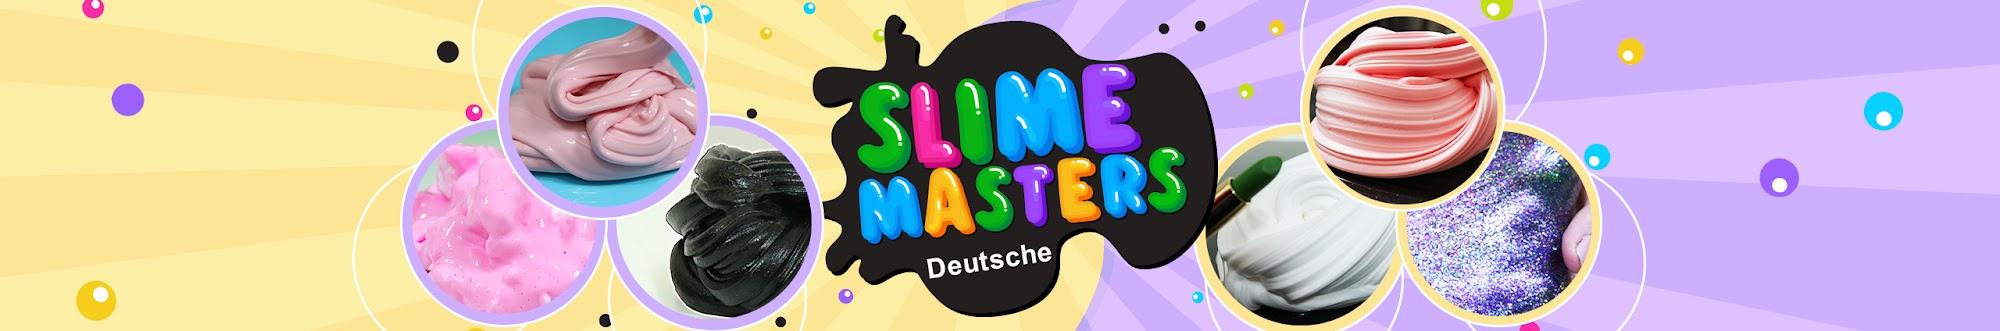 Slime Masters Deutsche